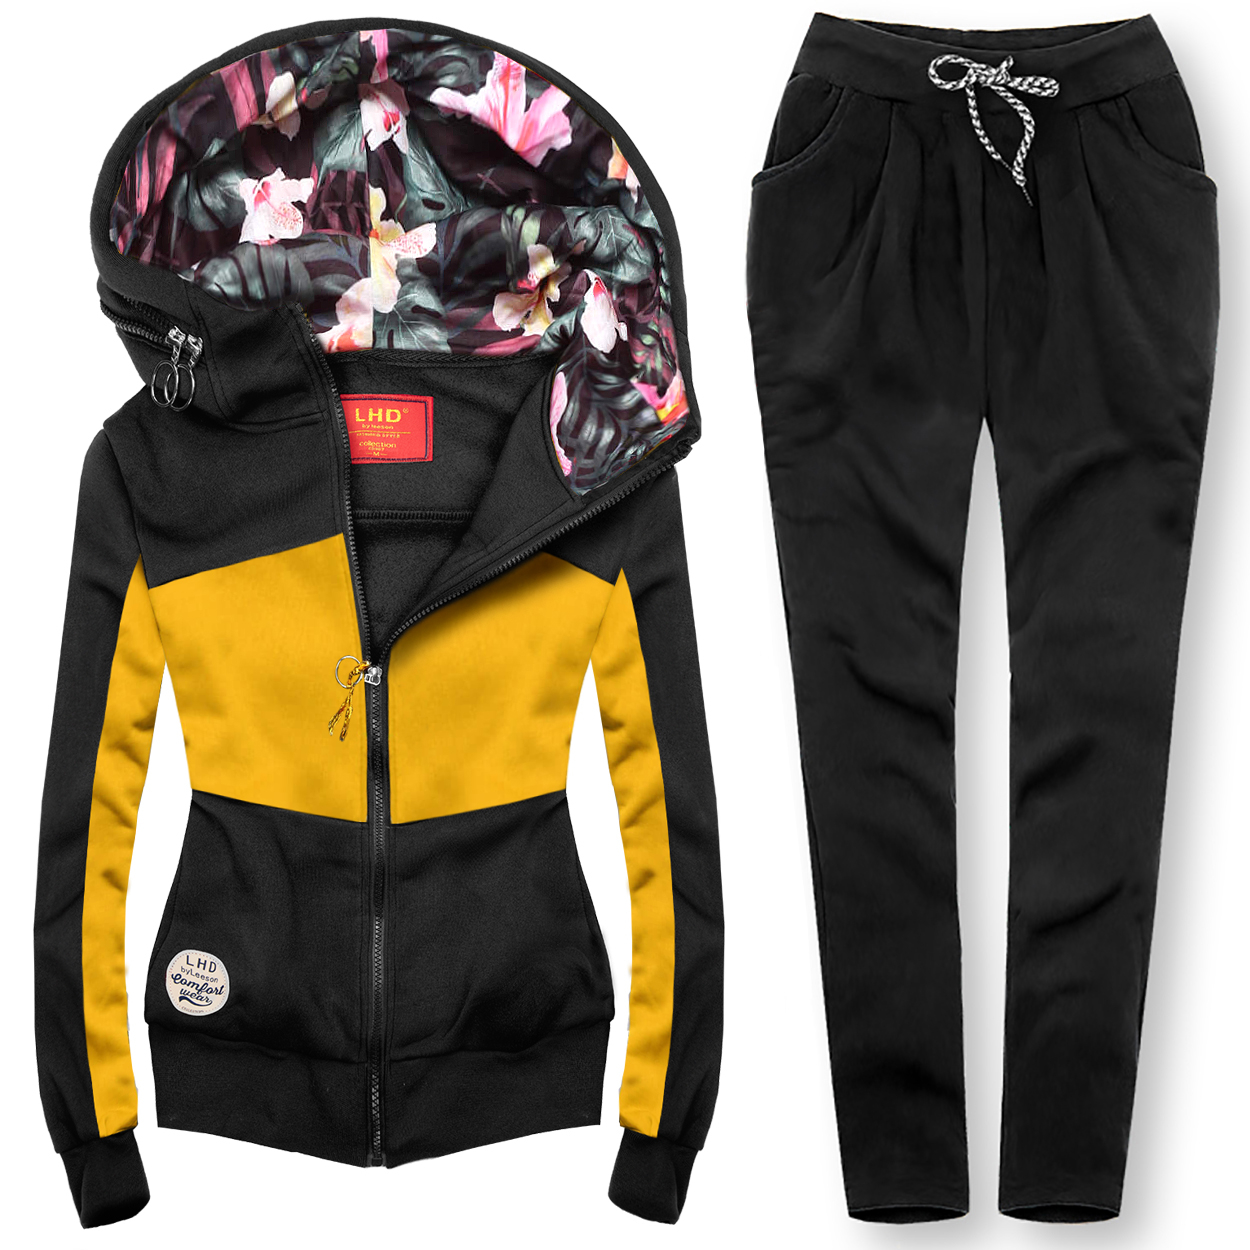 Oblečenie a doplnky - Súprava so vzorovanou kapucňou žltá/čierna